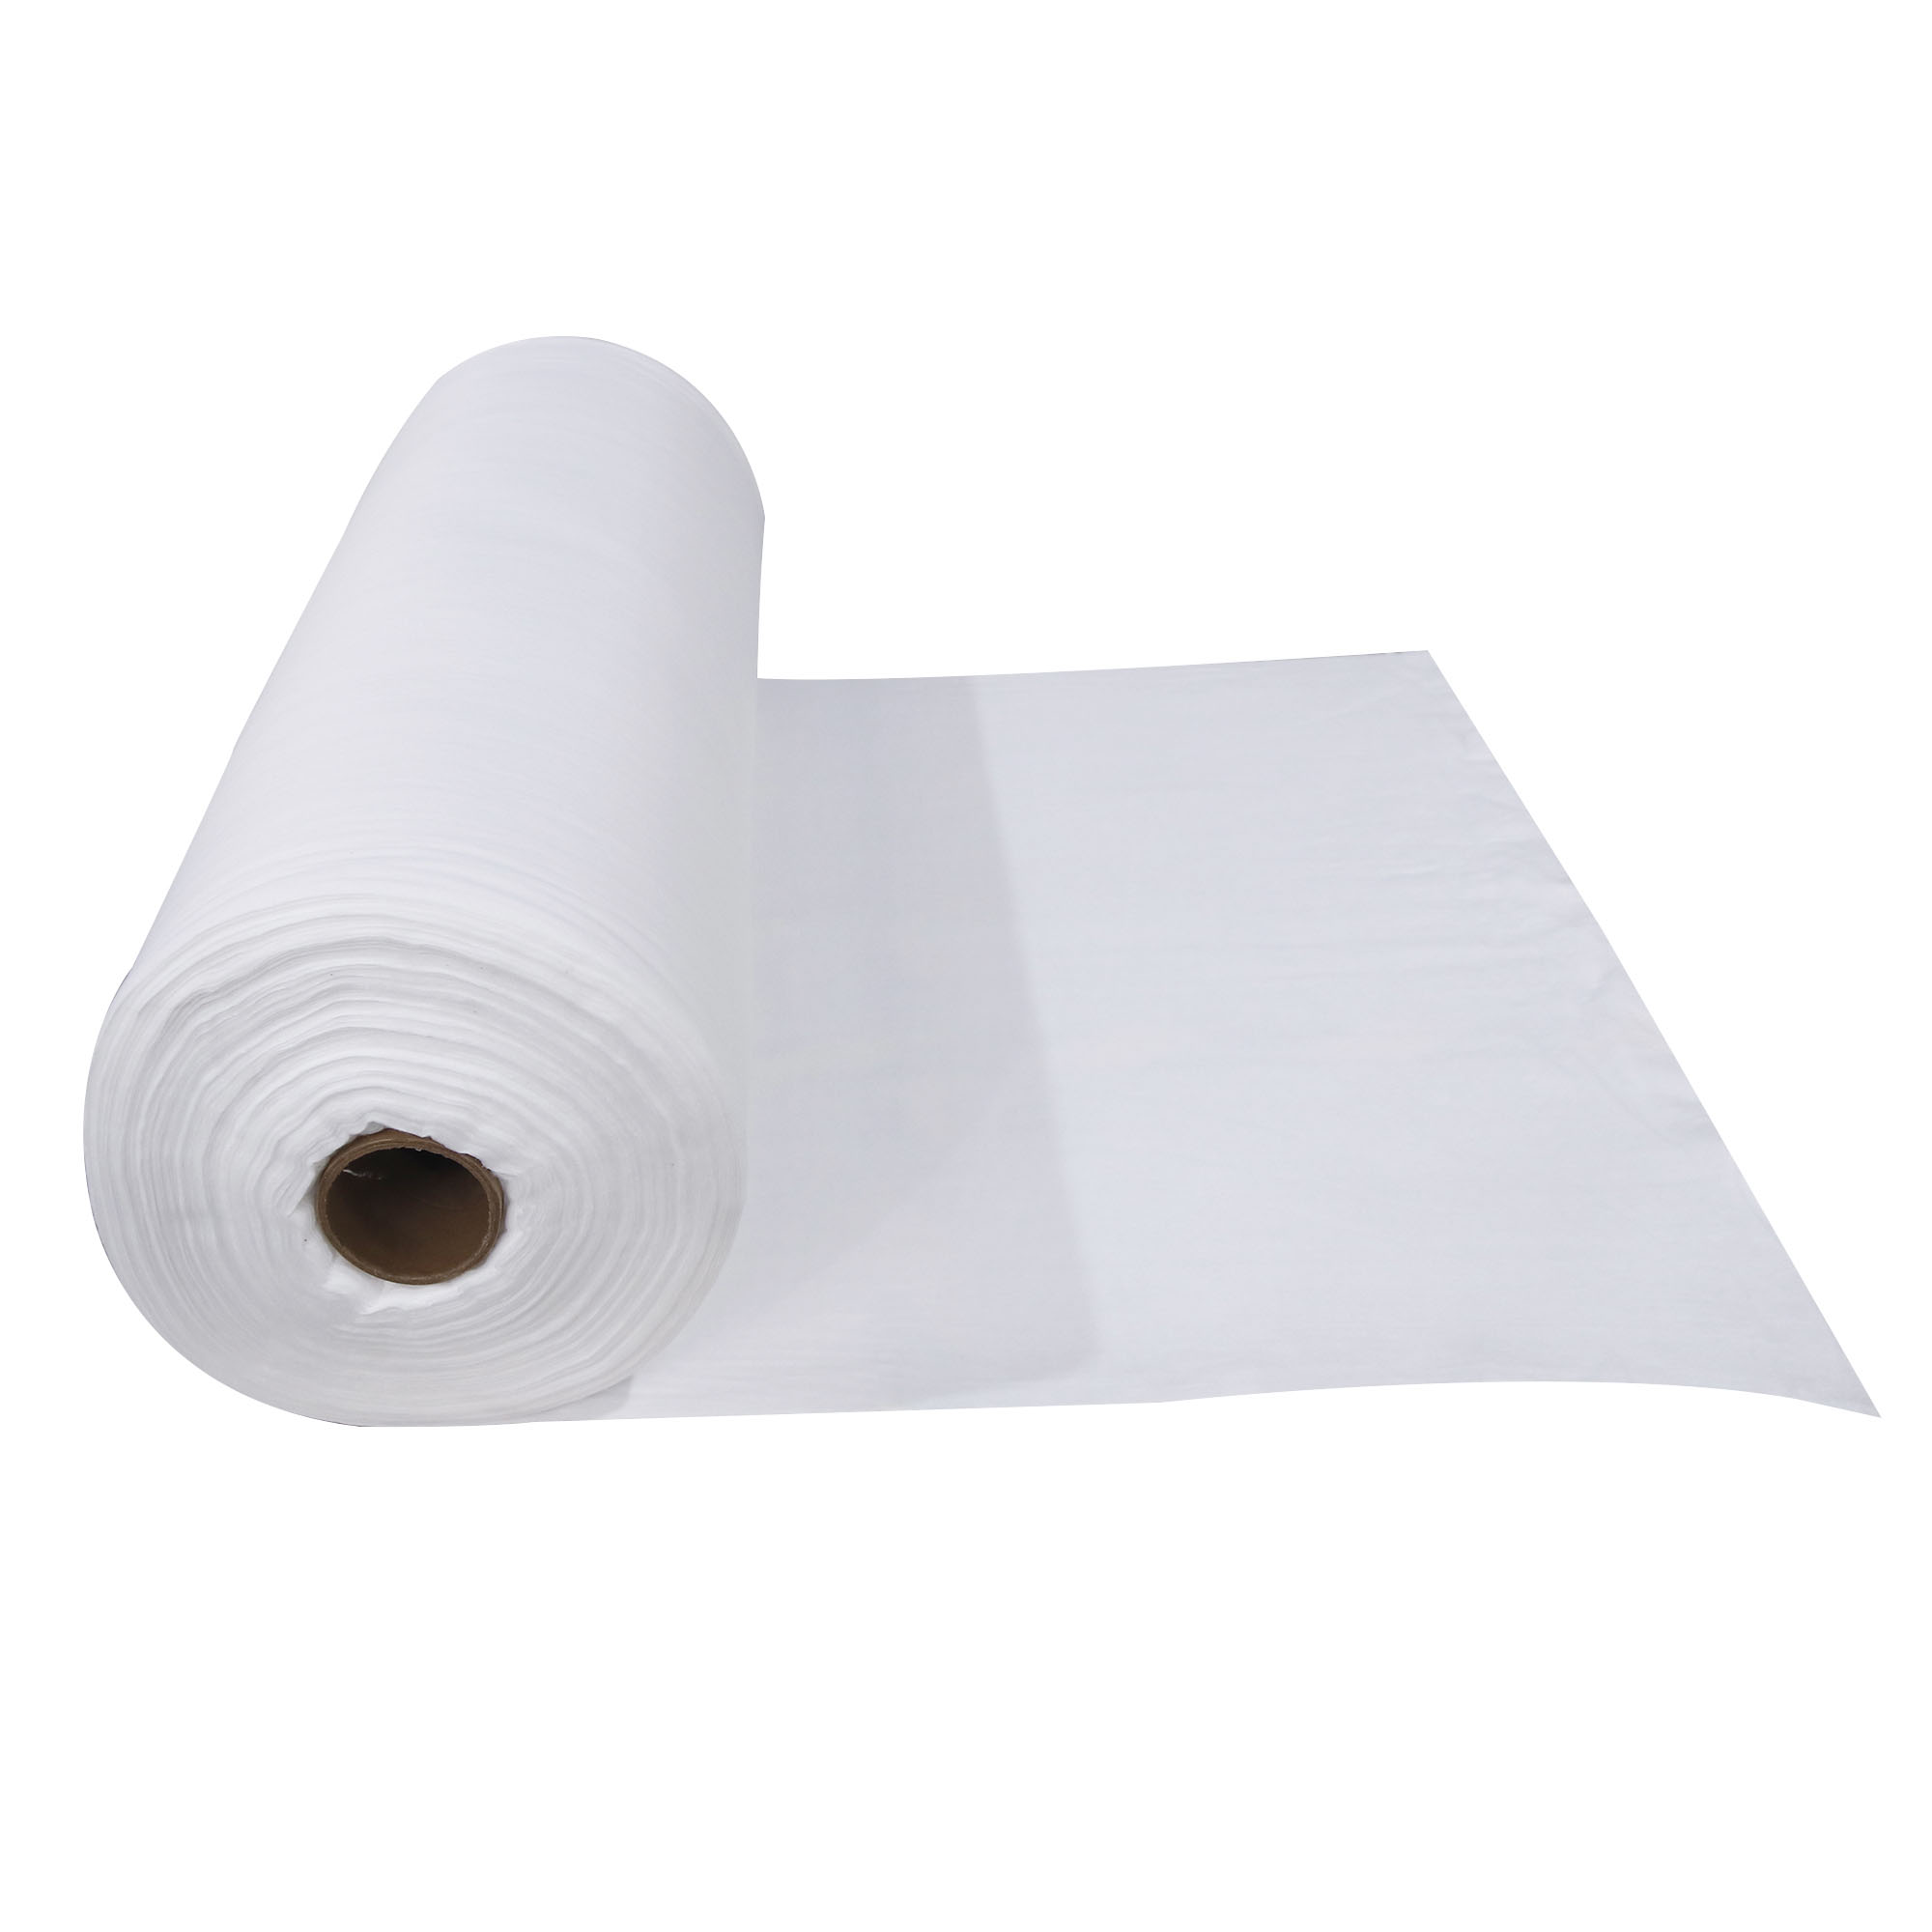 Materia prima del rollo de algodón absorbente médico para bastoncillos de algodón/bolas de algodón/hisopos de algodón